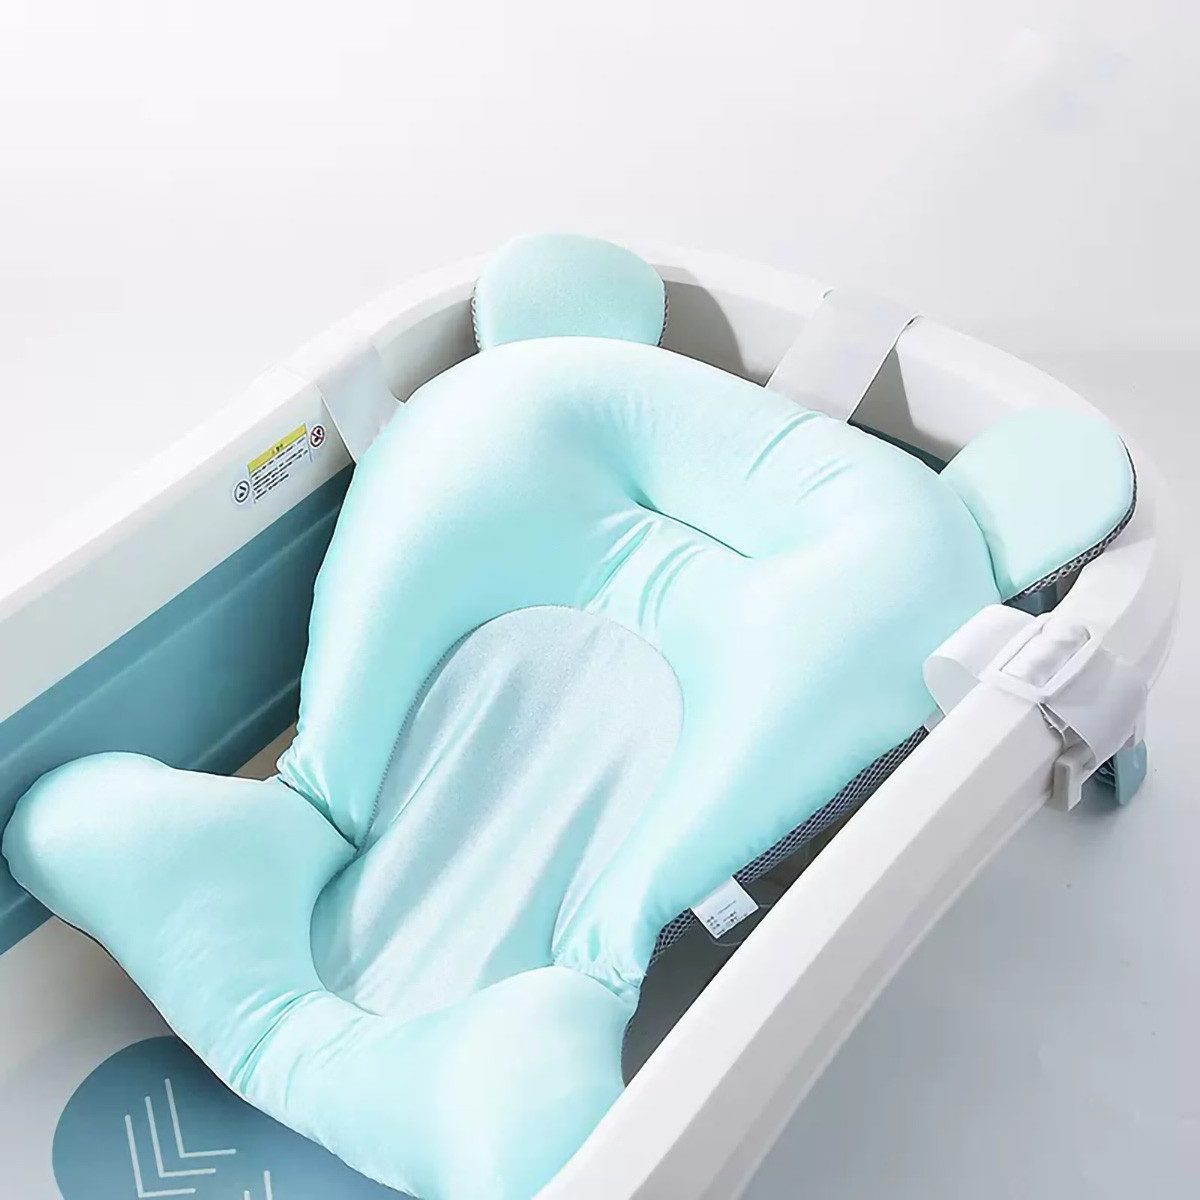 yozhiqu Badesitz Faltbare Baby-Badematte, Neugeborene Baby-Badewanne, Netztasche, Schwimmende Baby-Badematte, zum Sitzen oder Liegen, 50*37*28 cm